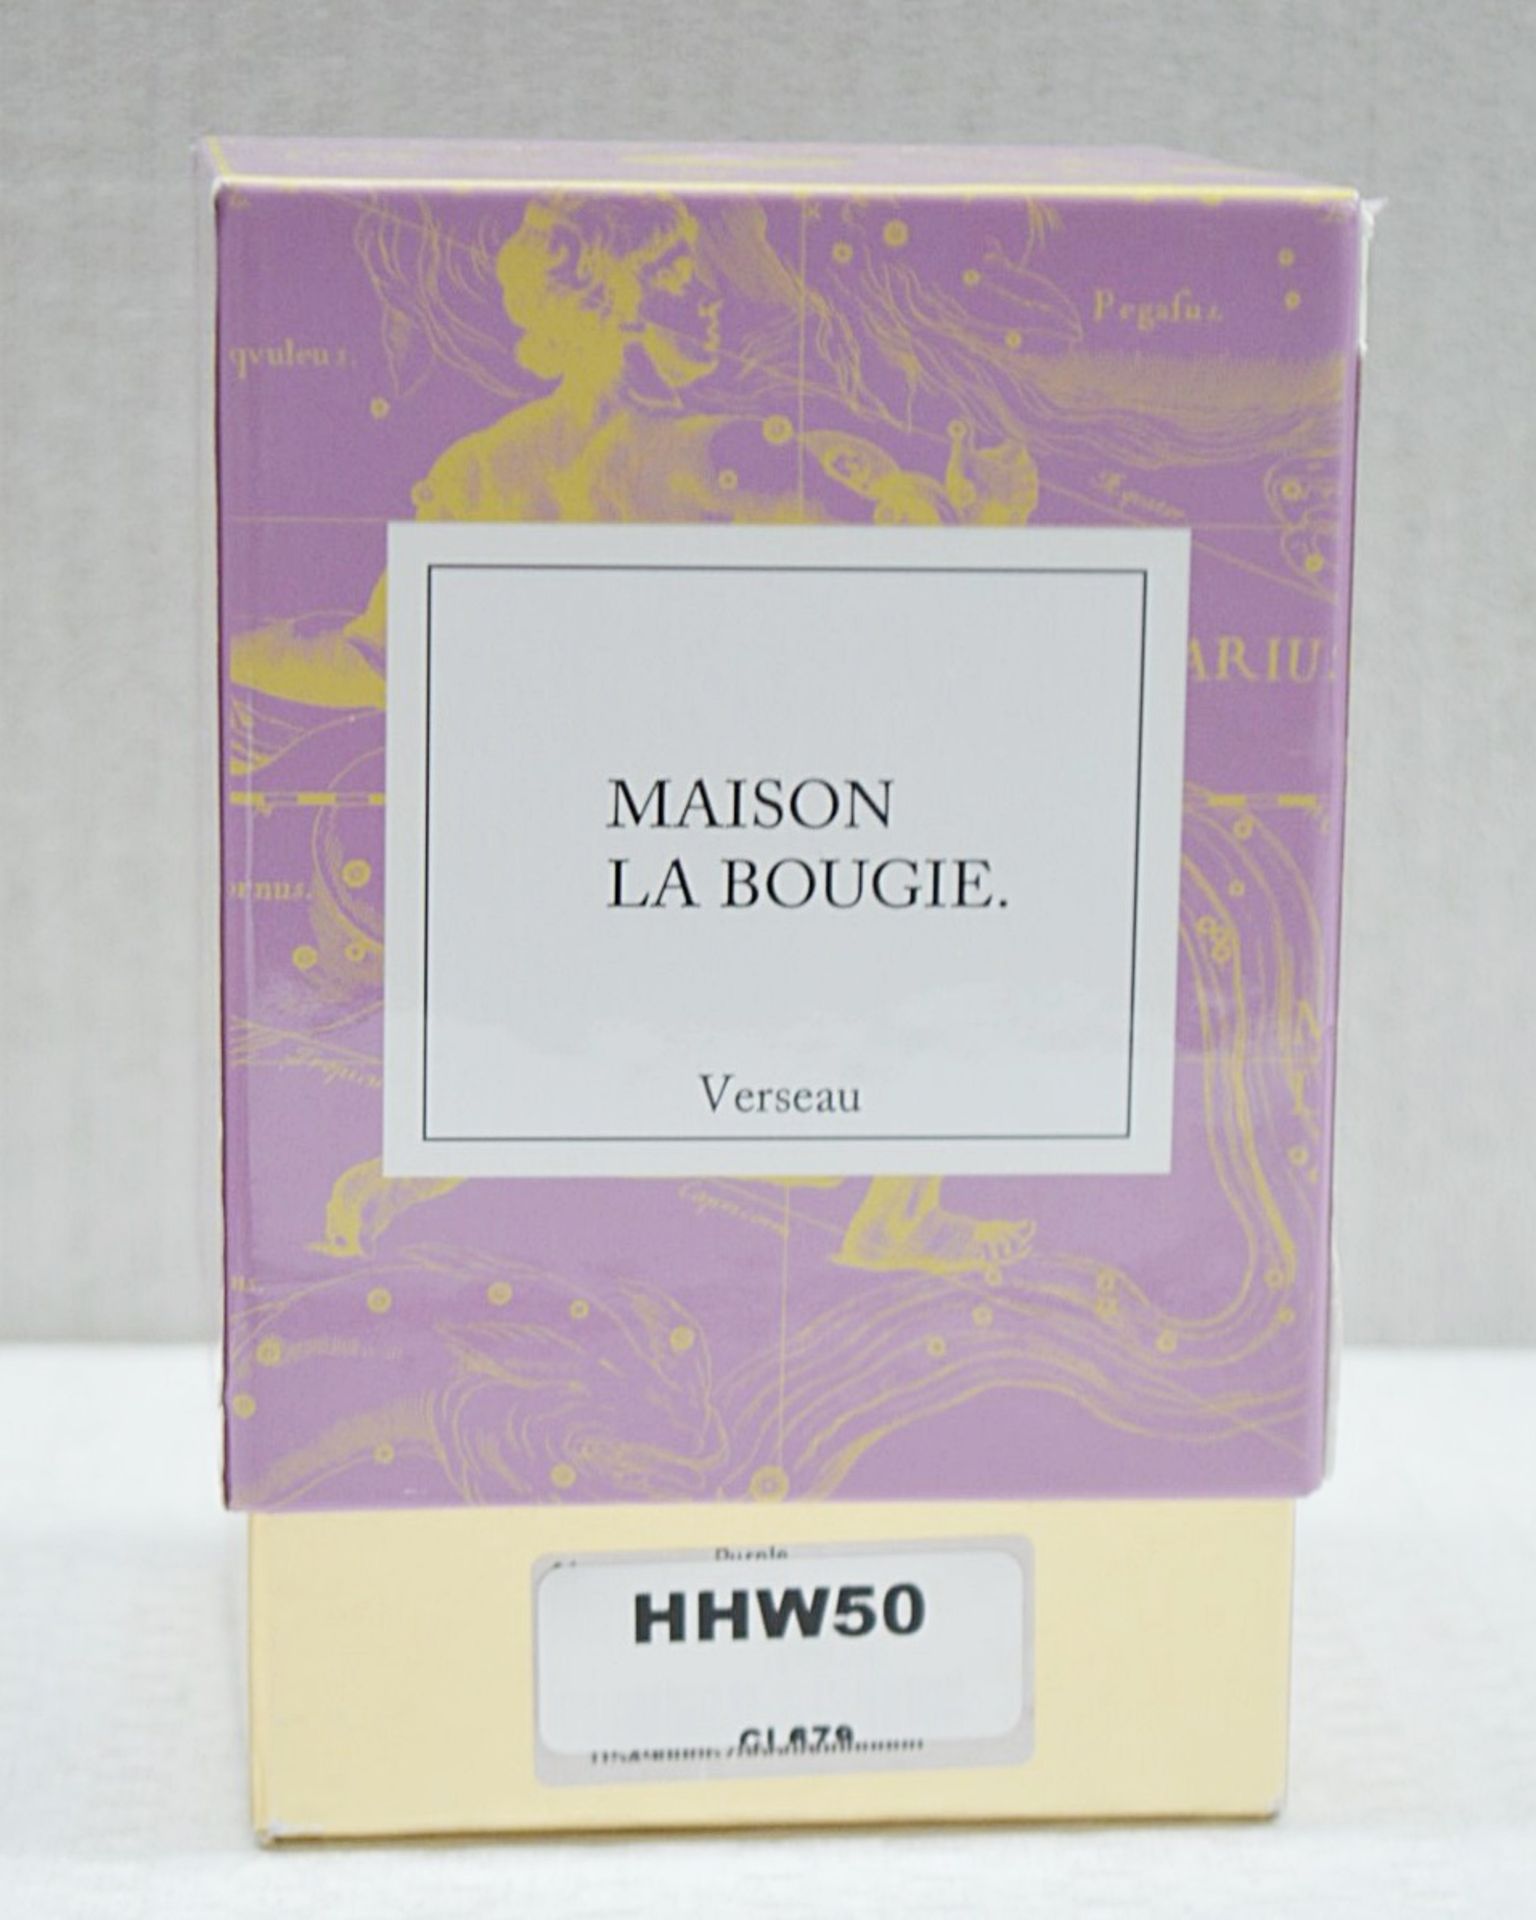 1 x Maison La Bougie Aquarius Candle 300G - Dimensions: ??? - Ref: HHW50/JUL21/PAL-B - CL011 - - Image 2 of 5